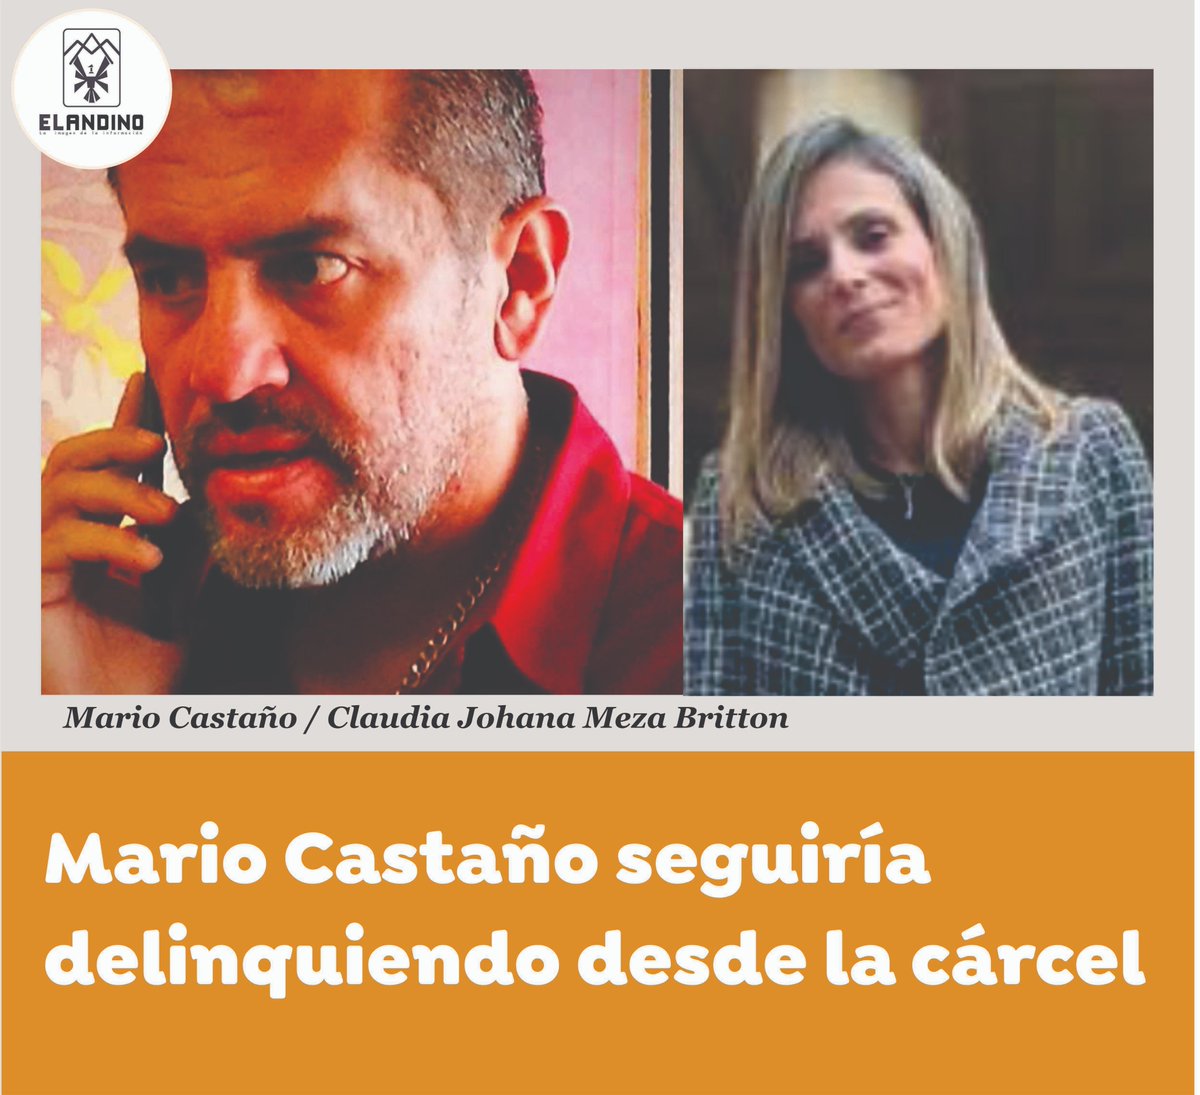 MARIO CASTAÑO SEGUIRÍA DELINQUIENDO DESDE LA CÁRCEL
Leer nota en: periodicoelandino.com/noticia.php?no…
#MarioCastaño #Marionetas #PartidoLiberal